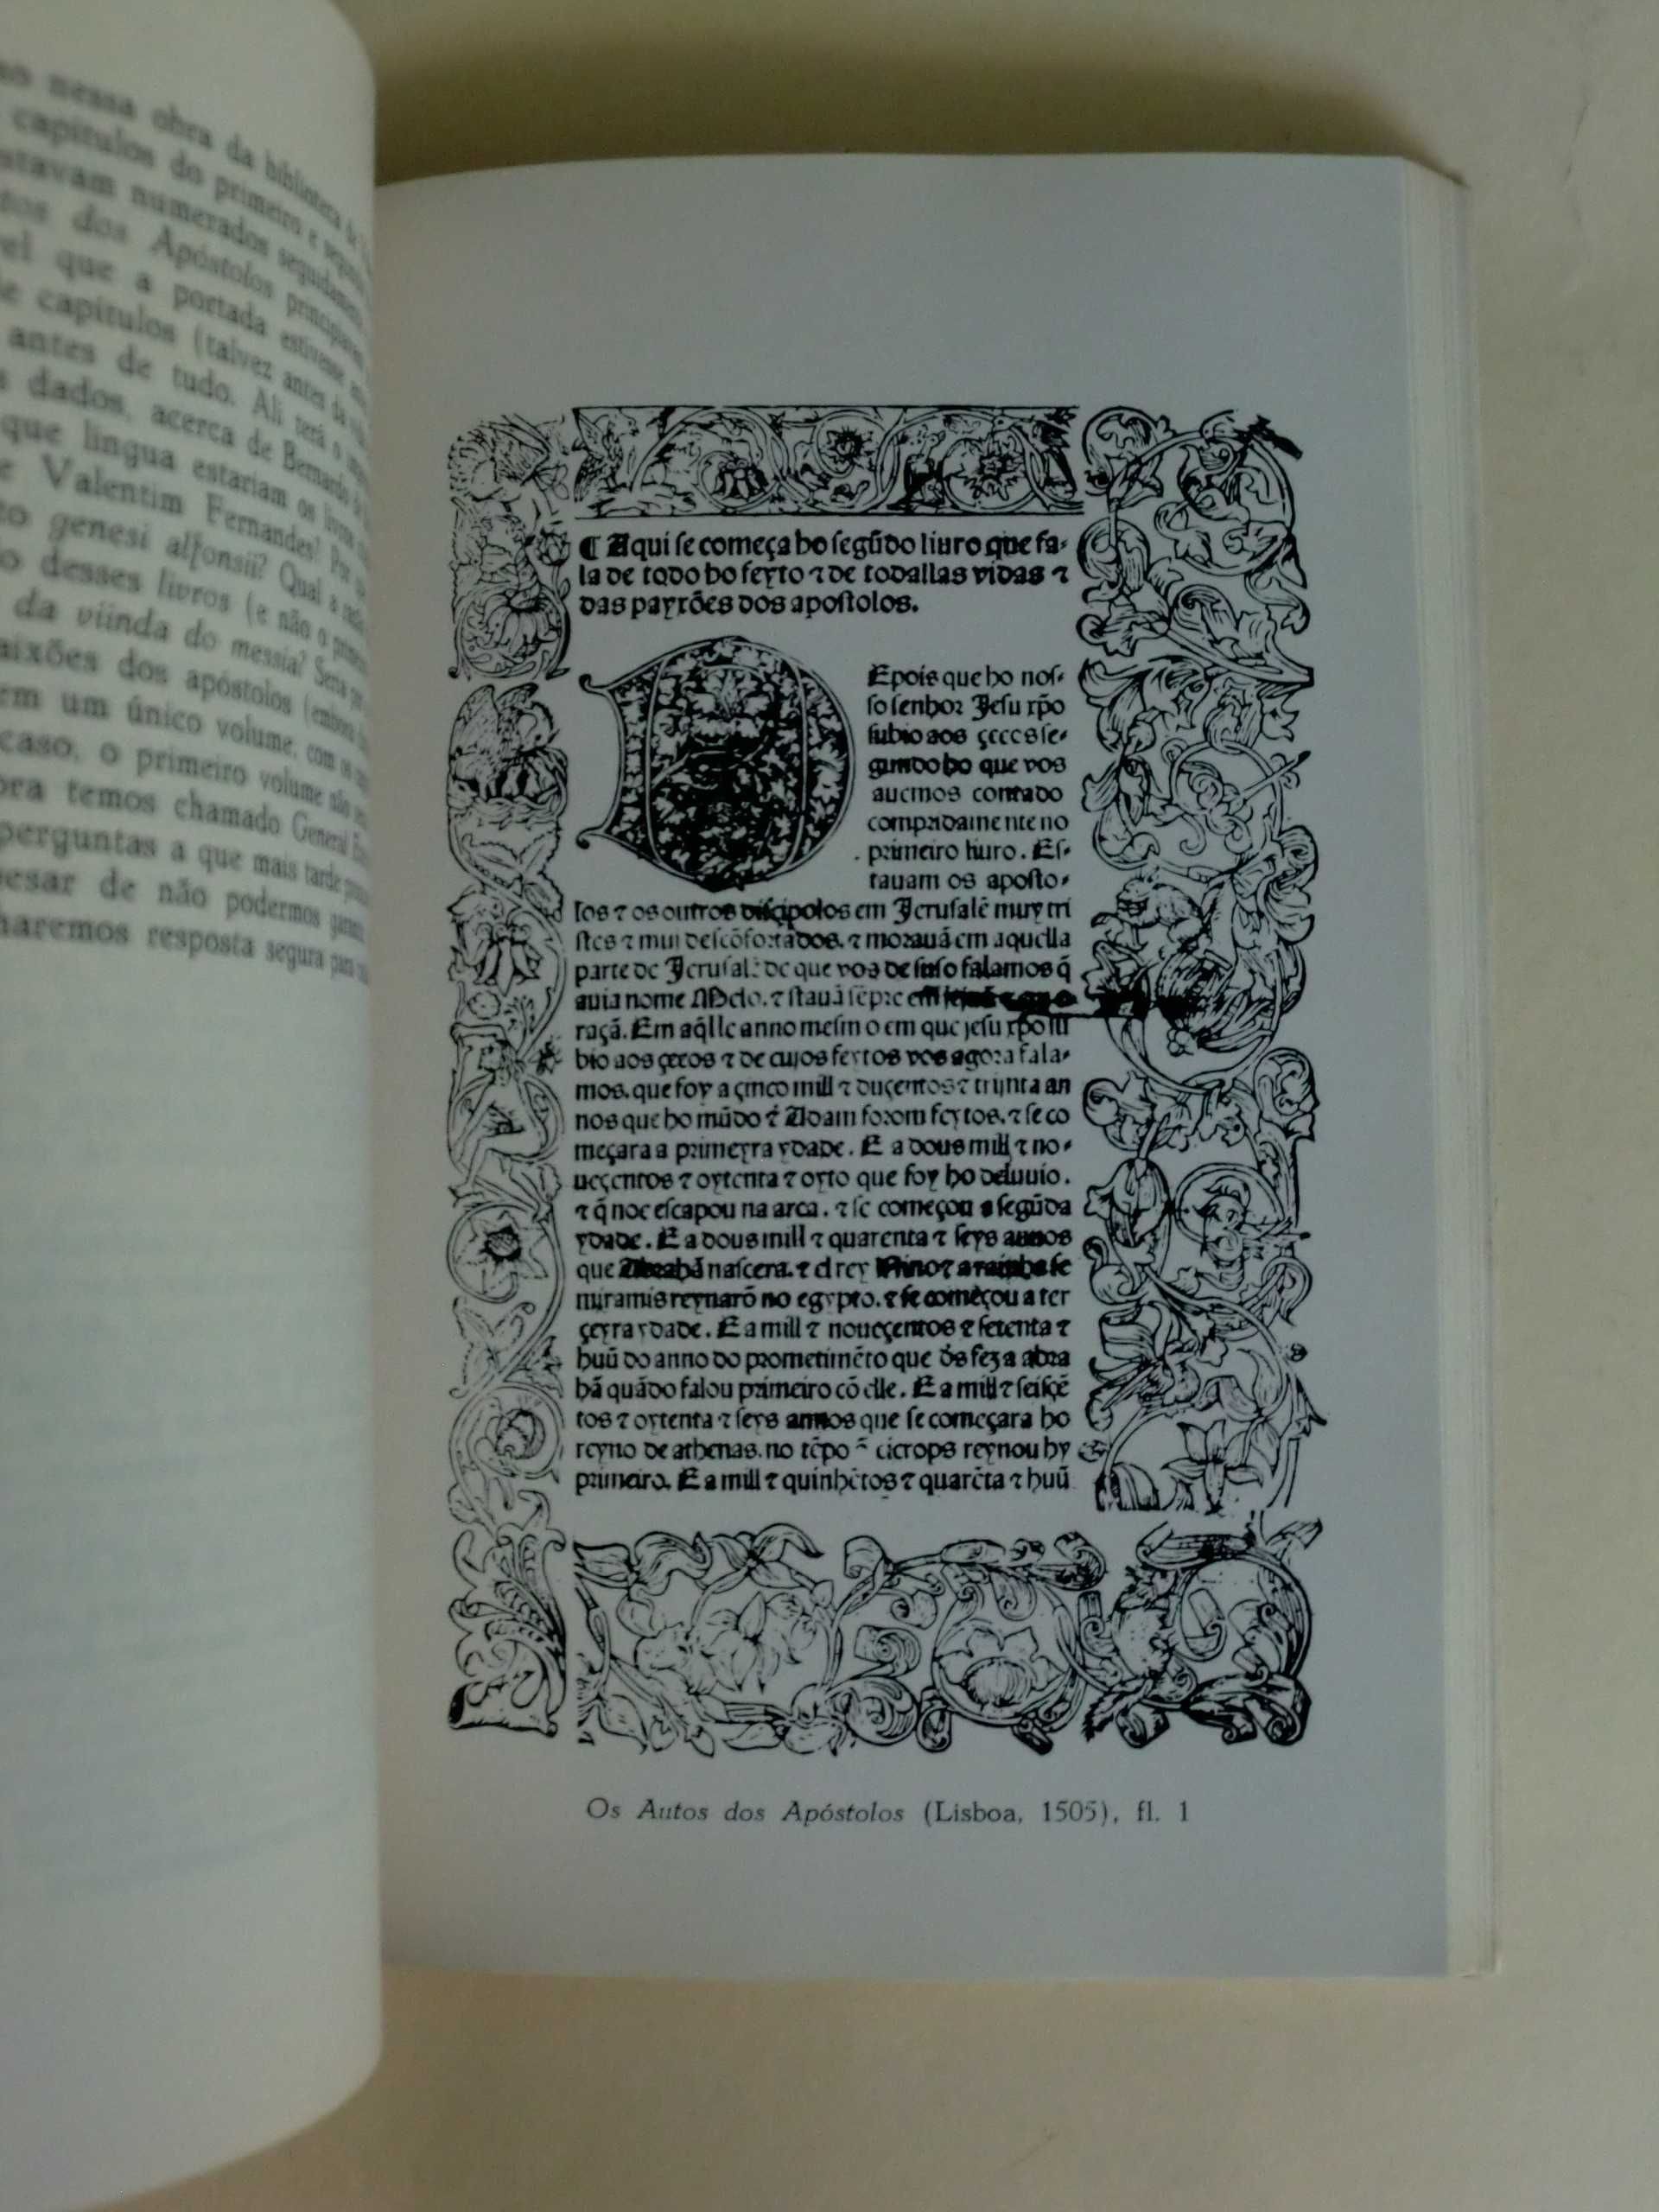 Estudos de Cultura Medieval
Volume II
de Mário Martins, S.J.